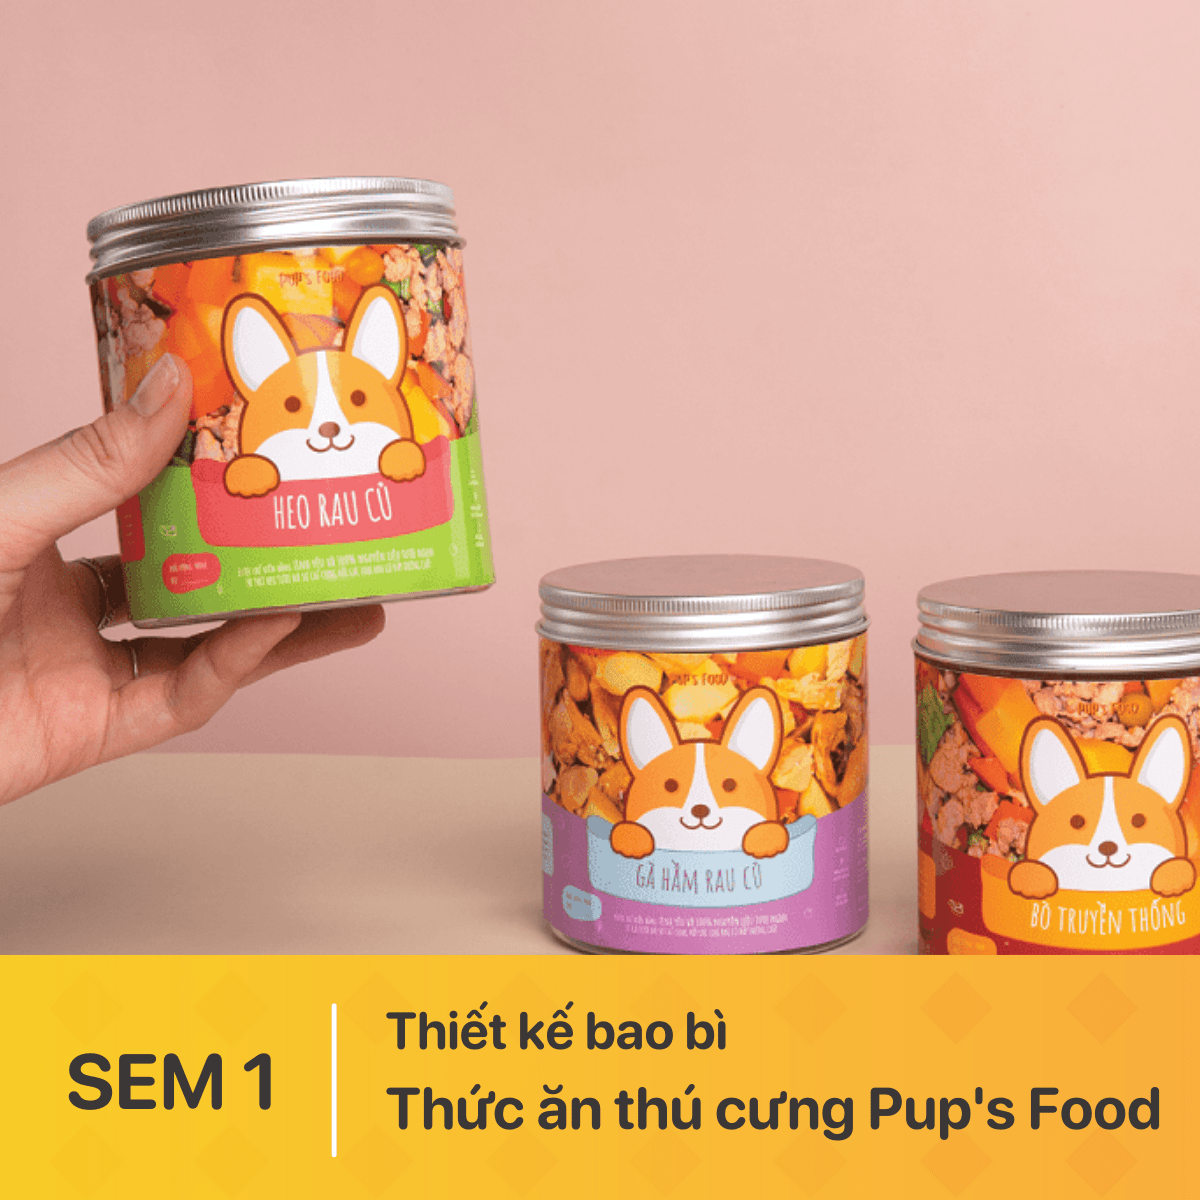 Bộ sản phẩm Bao bì Thức ăn thú cưng Pup’s Food của học viên tại Arena Multimedia